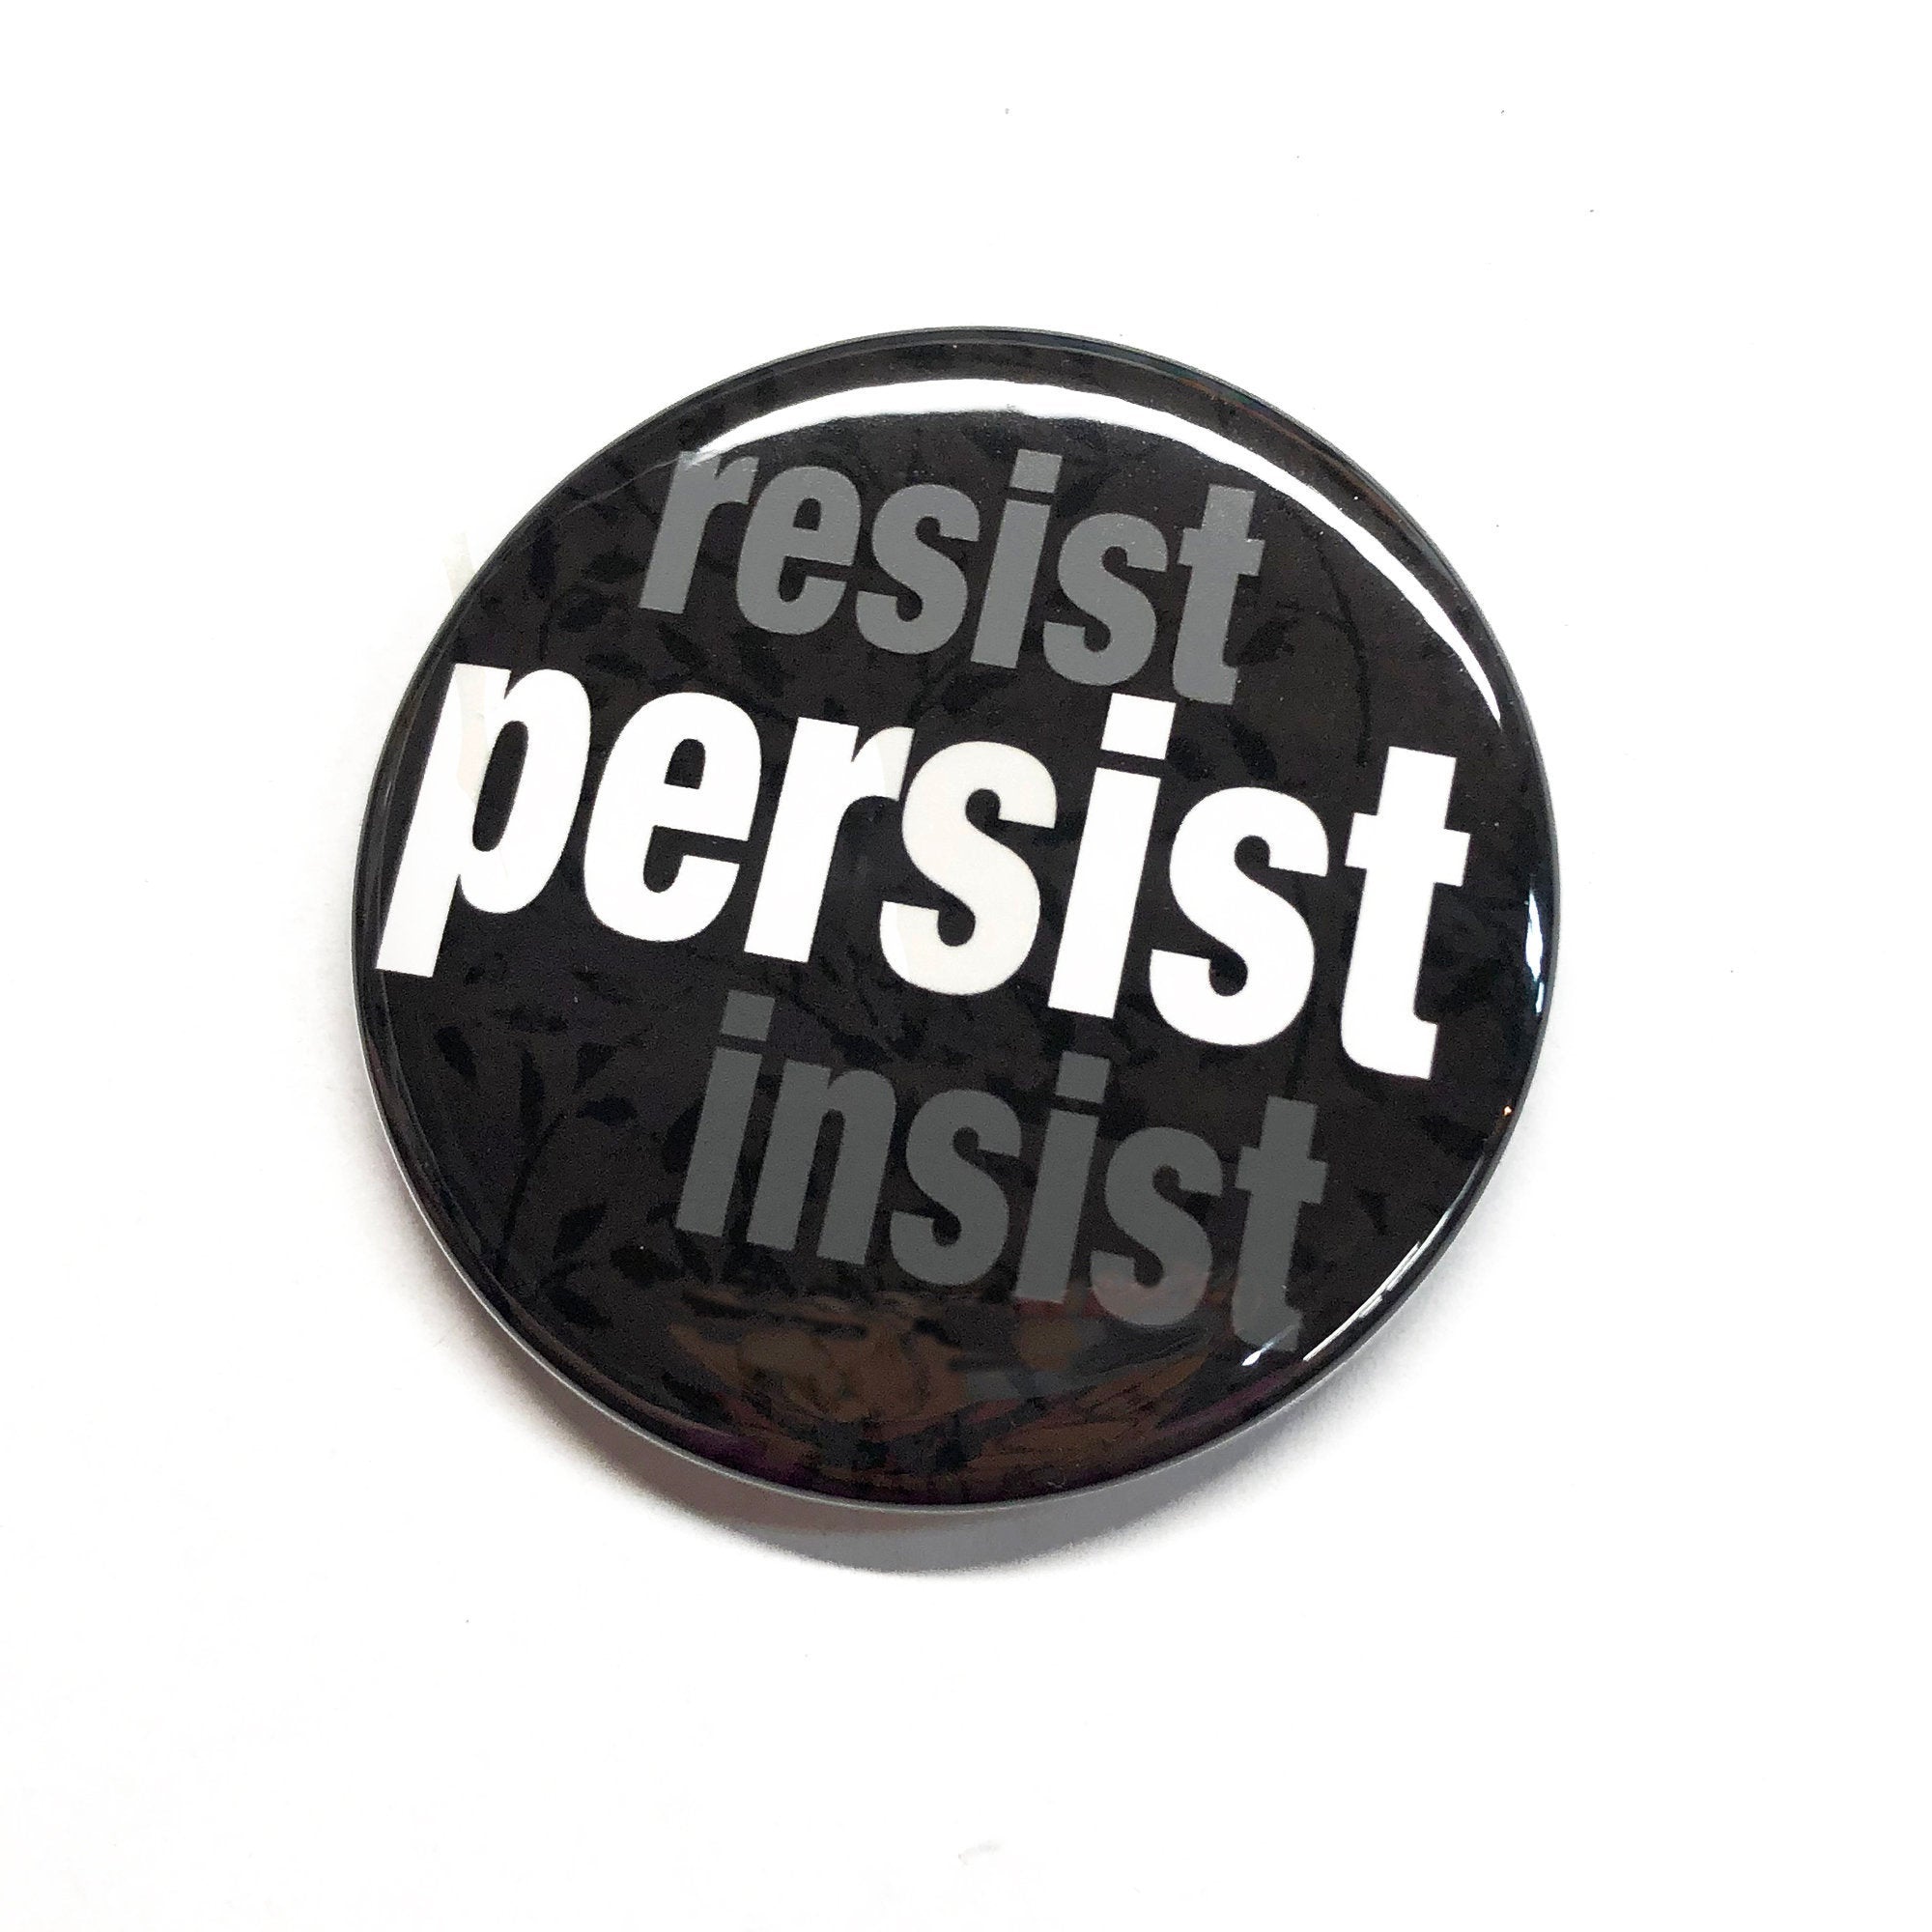 Resist Insist Persist Pin or Magnet